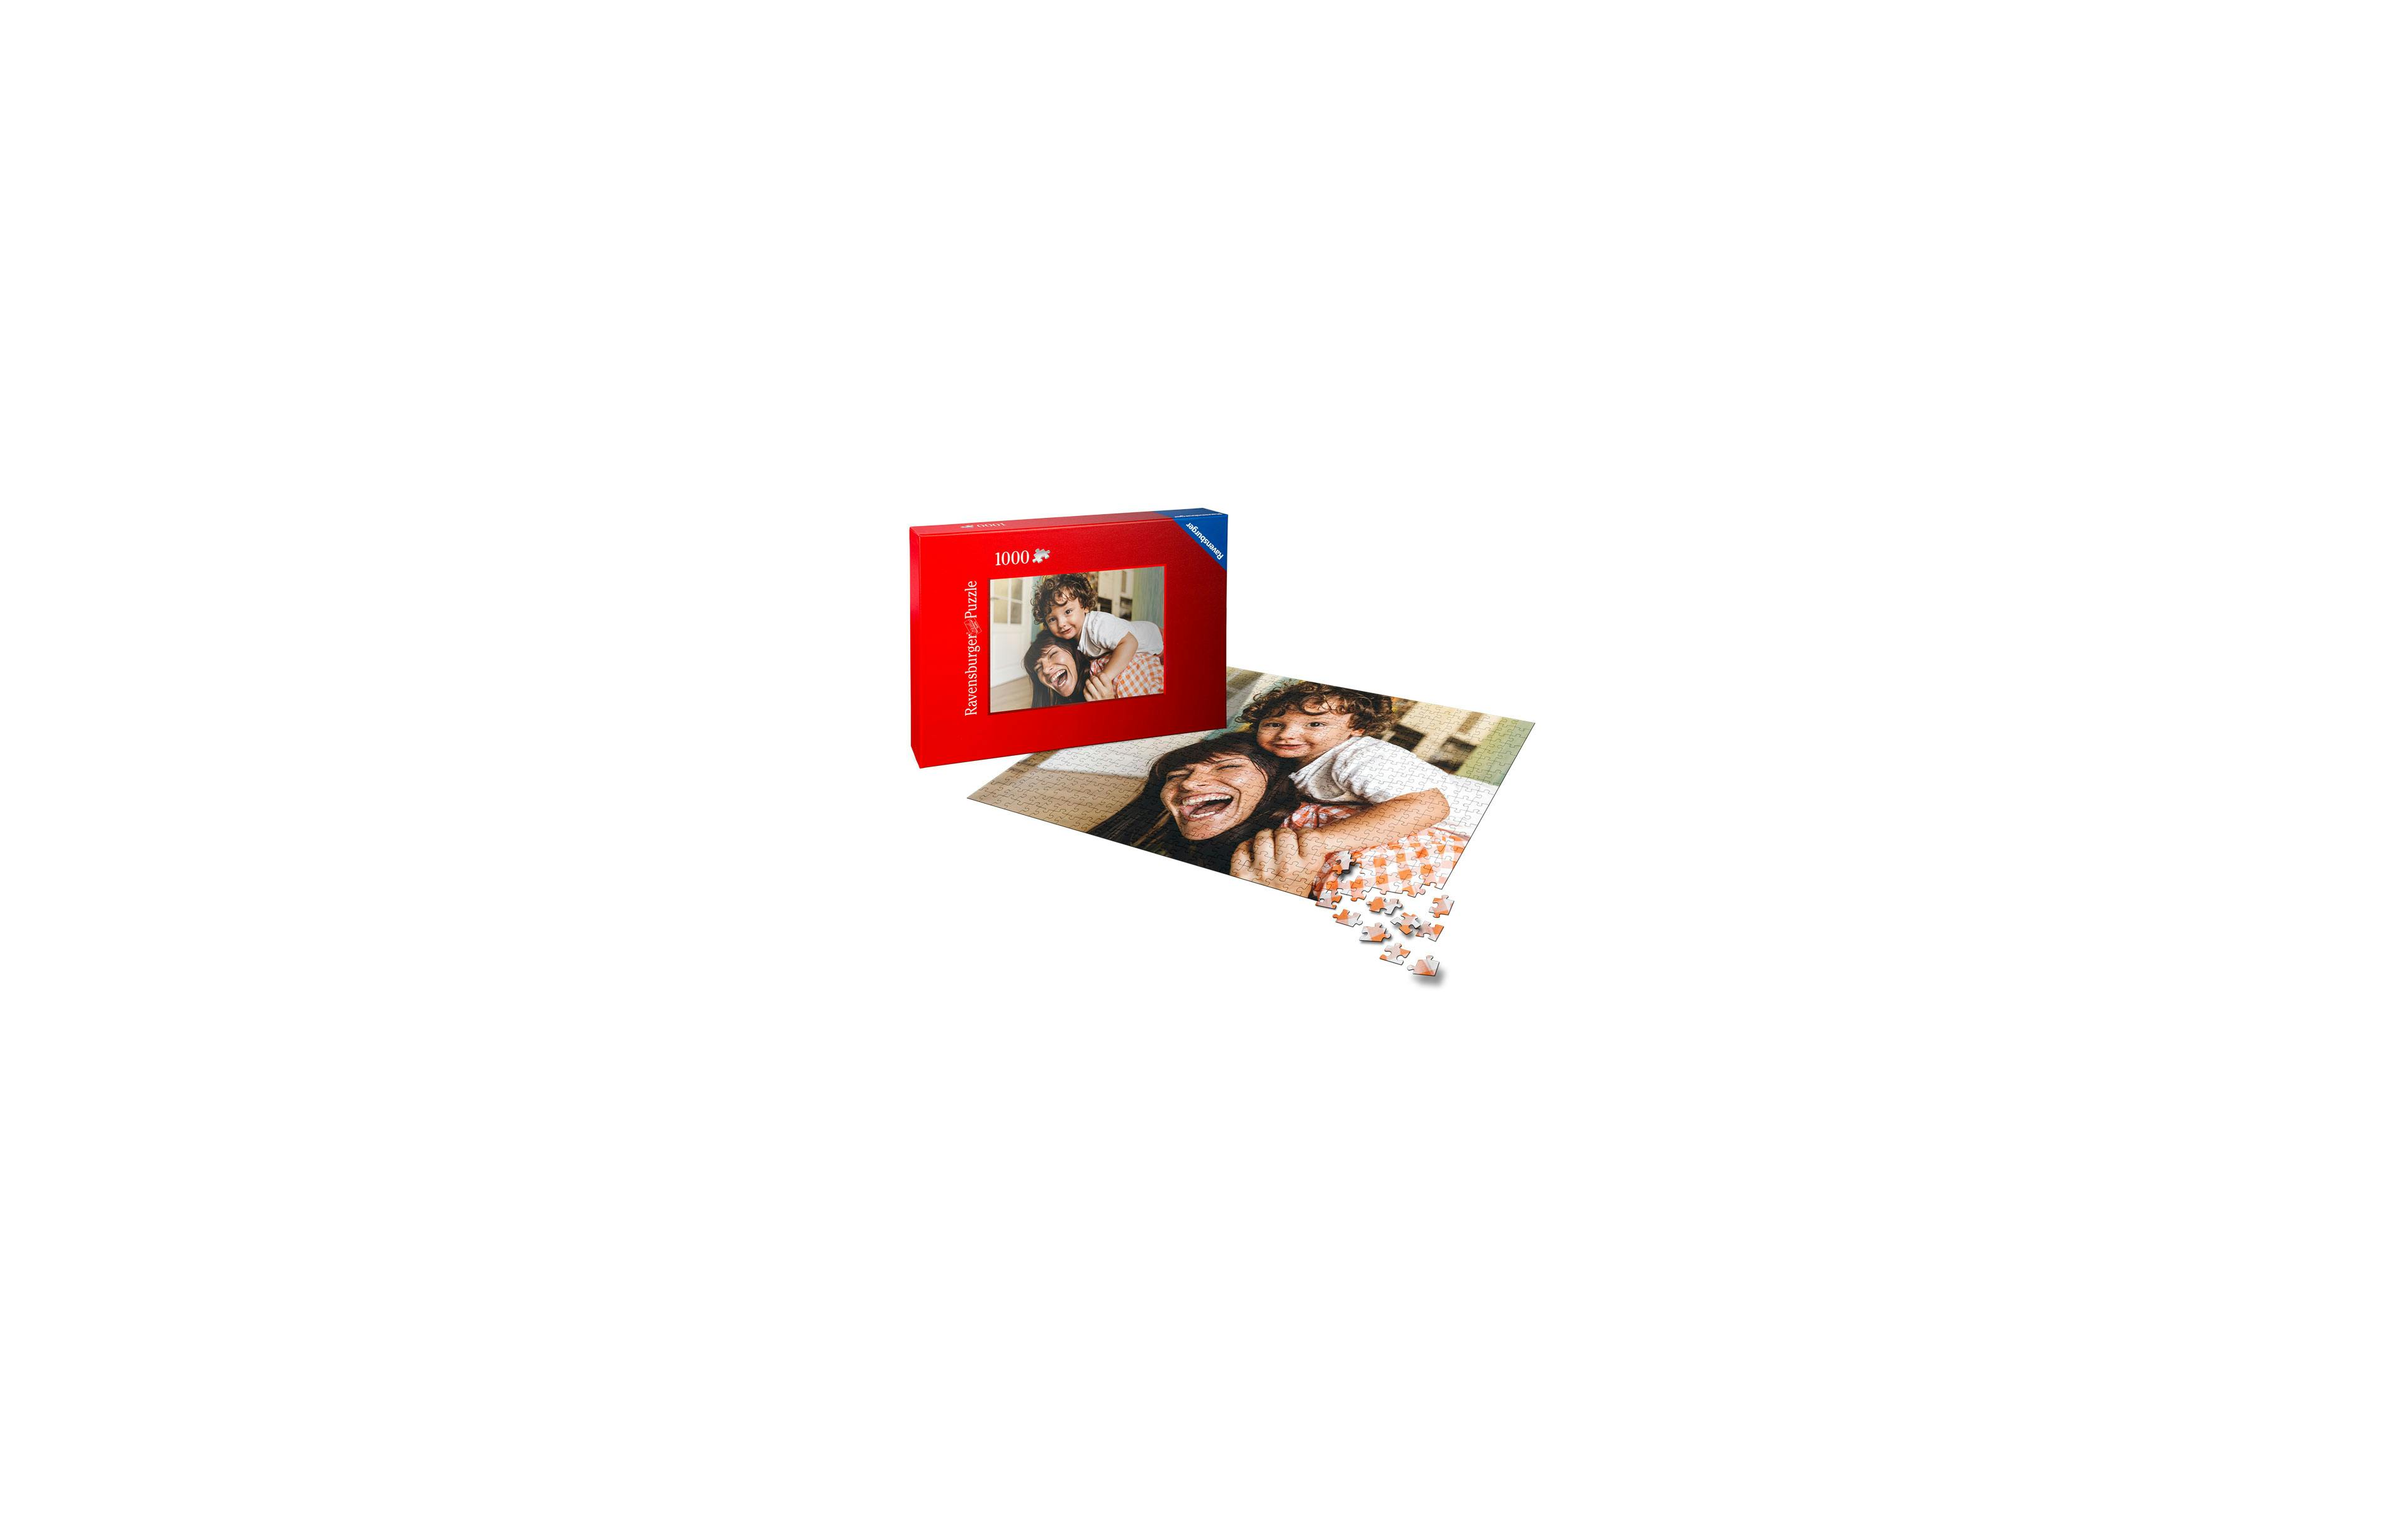 Puzzle con foto Ravensburger de 1000 piezas con una imagen de una madre con su hijo